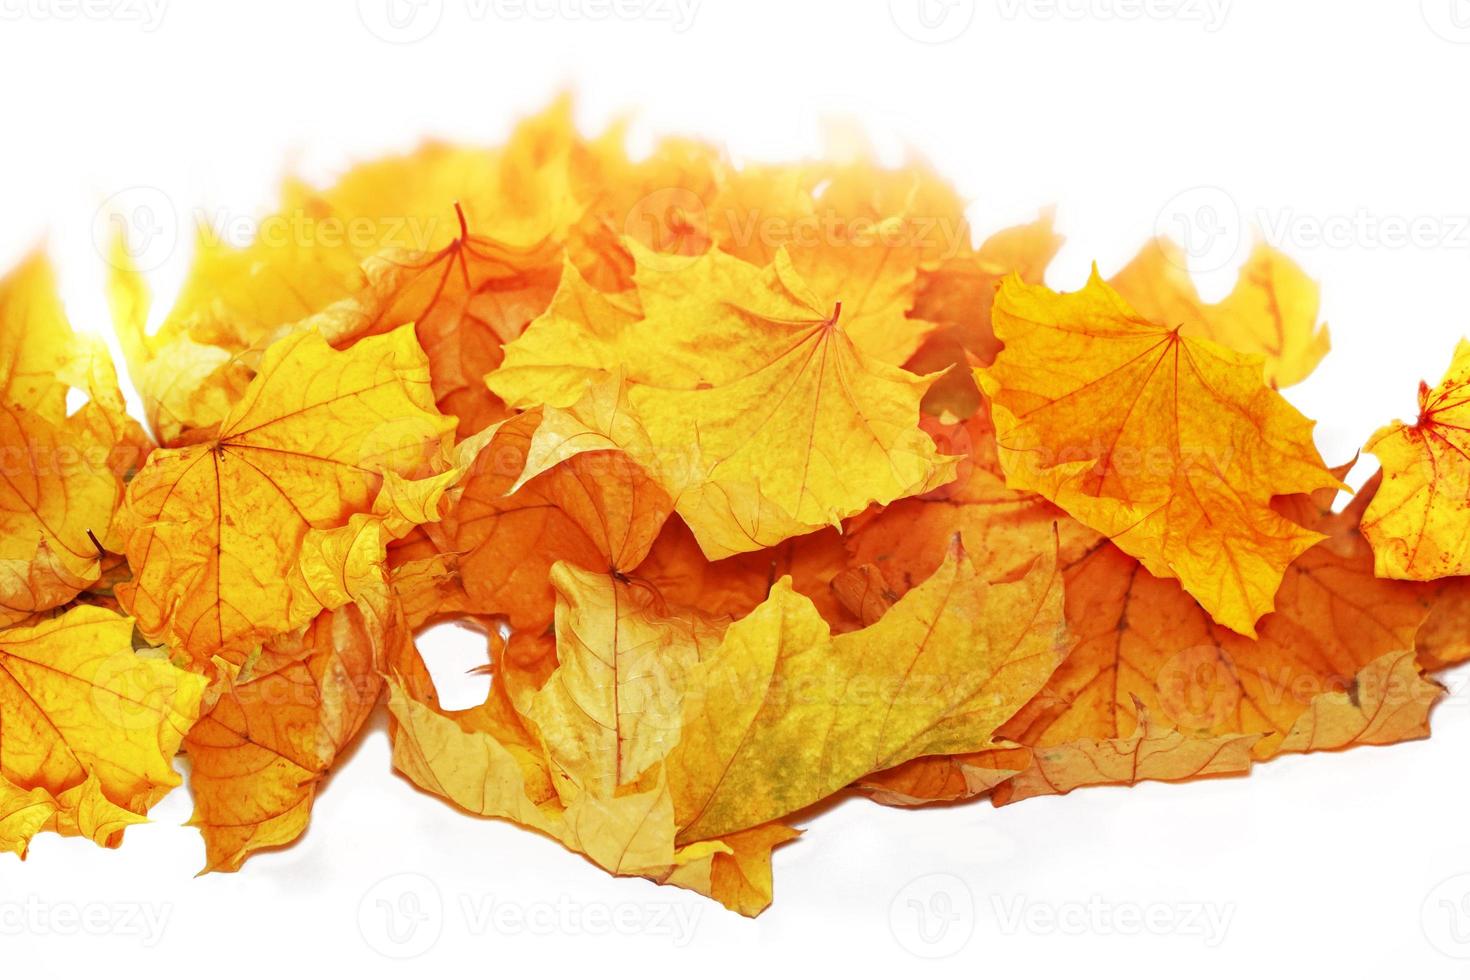 heldere kleurrijke herfstbladeren. natuur foto